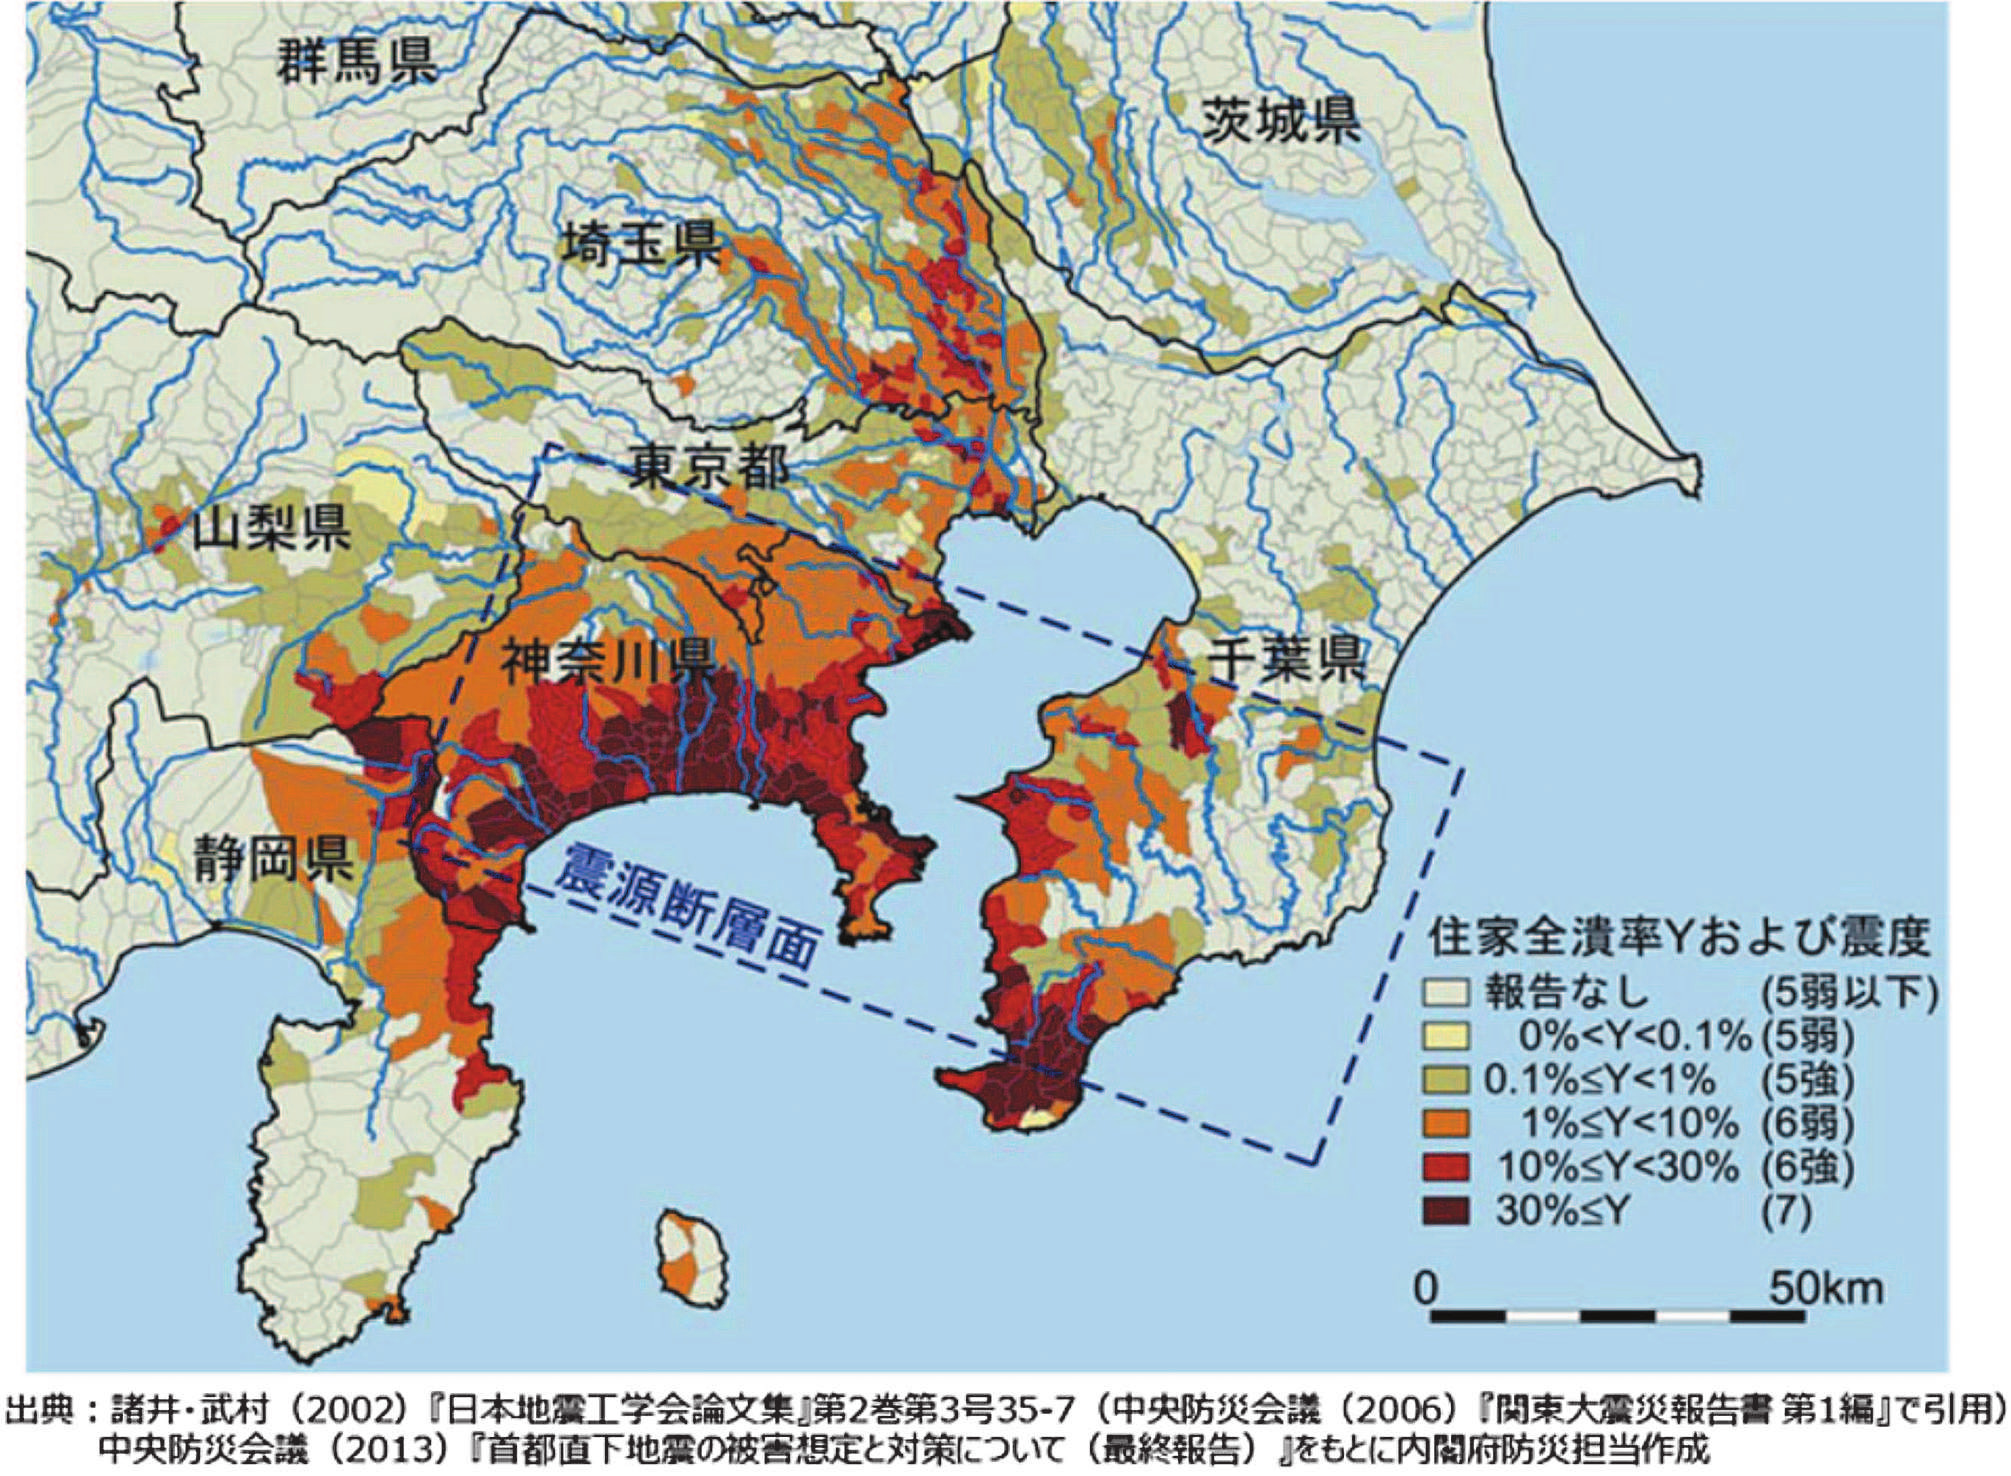 【防災特集】[関東大震災から100年]都市ガス被害を振り返る、東京、横浜市、小田原ガスが被災